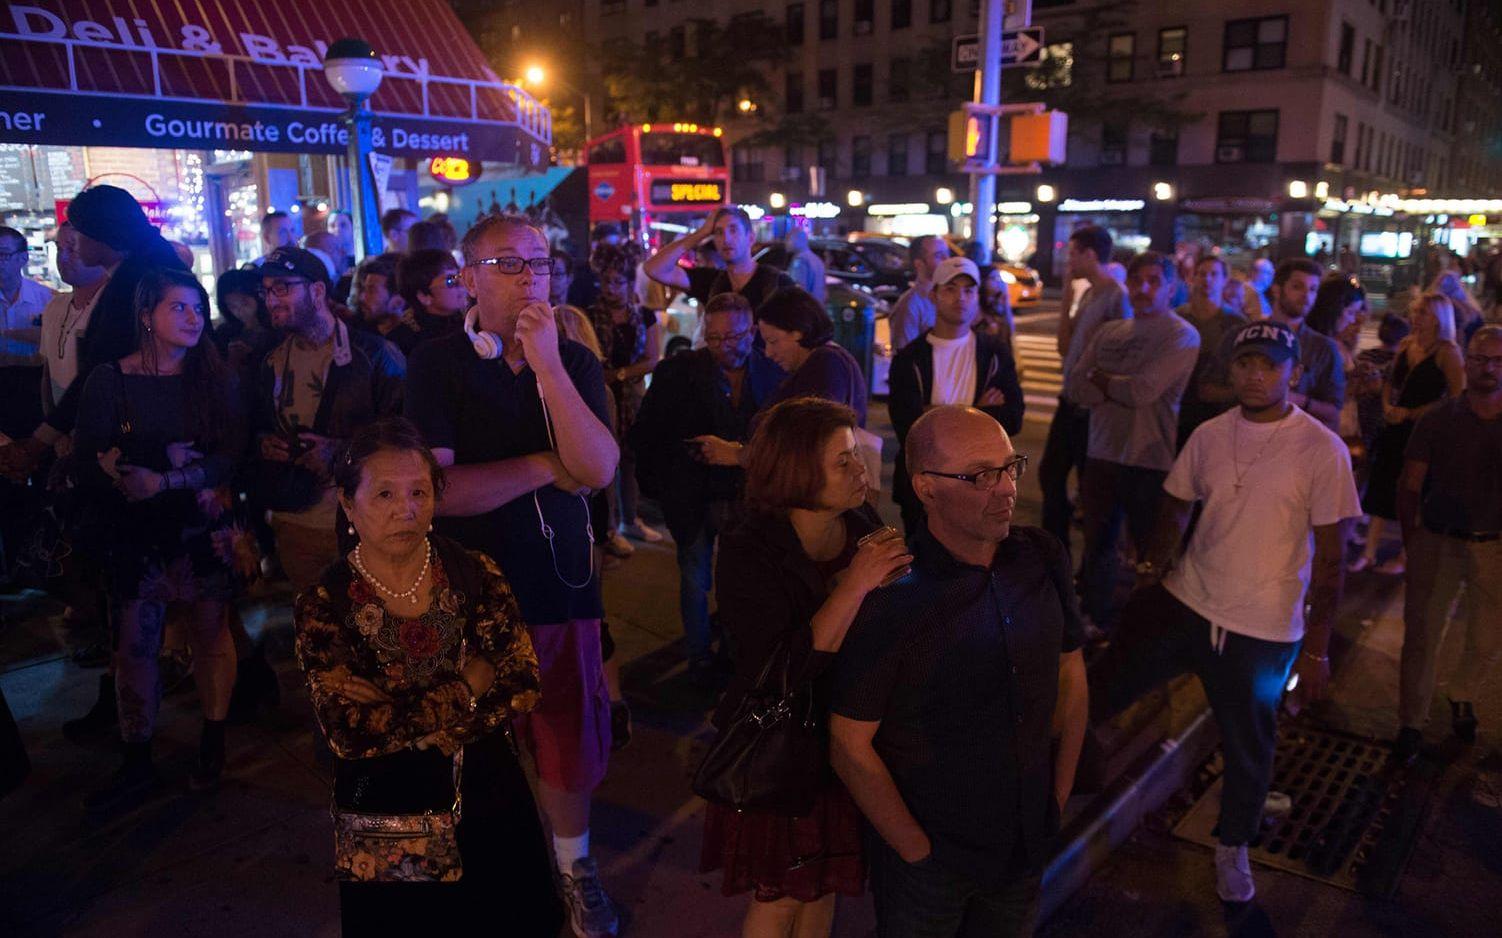 En explosion har skakat New York. Minst 29 personer har skadats. Två misstänkta odetonerade sprängladdningar har påträffats. Foto: TT/AP